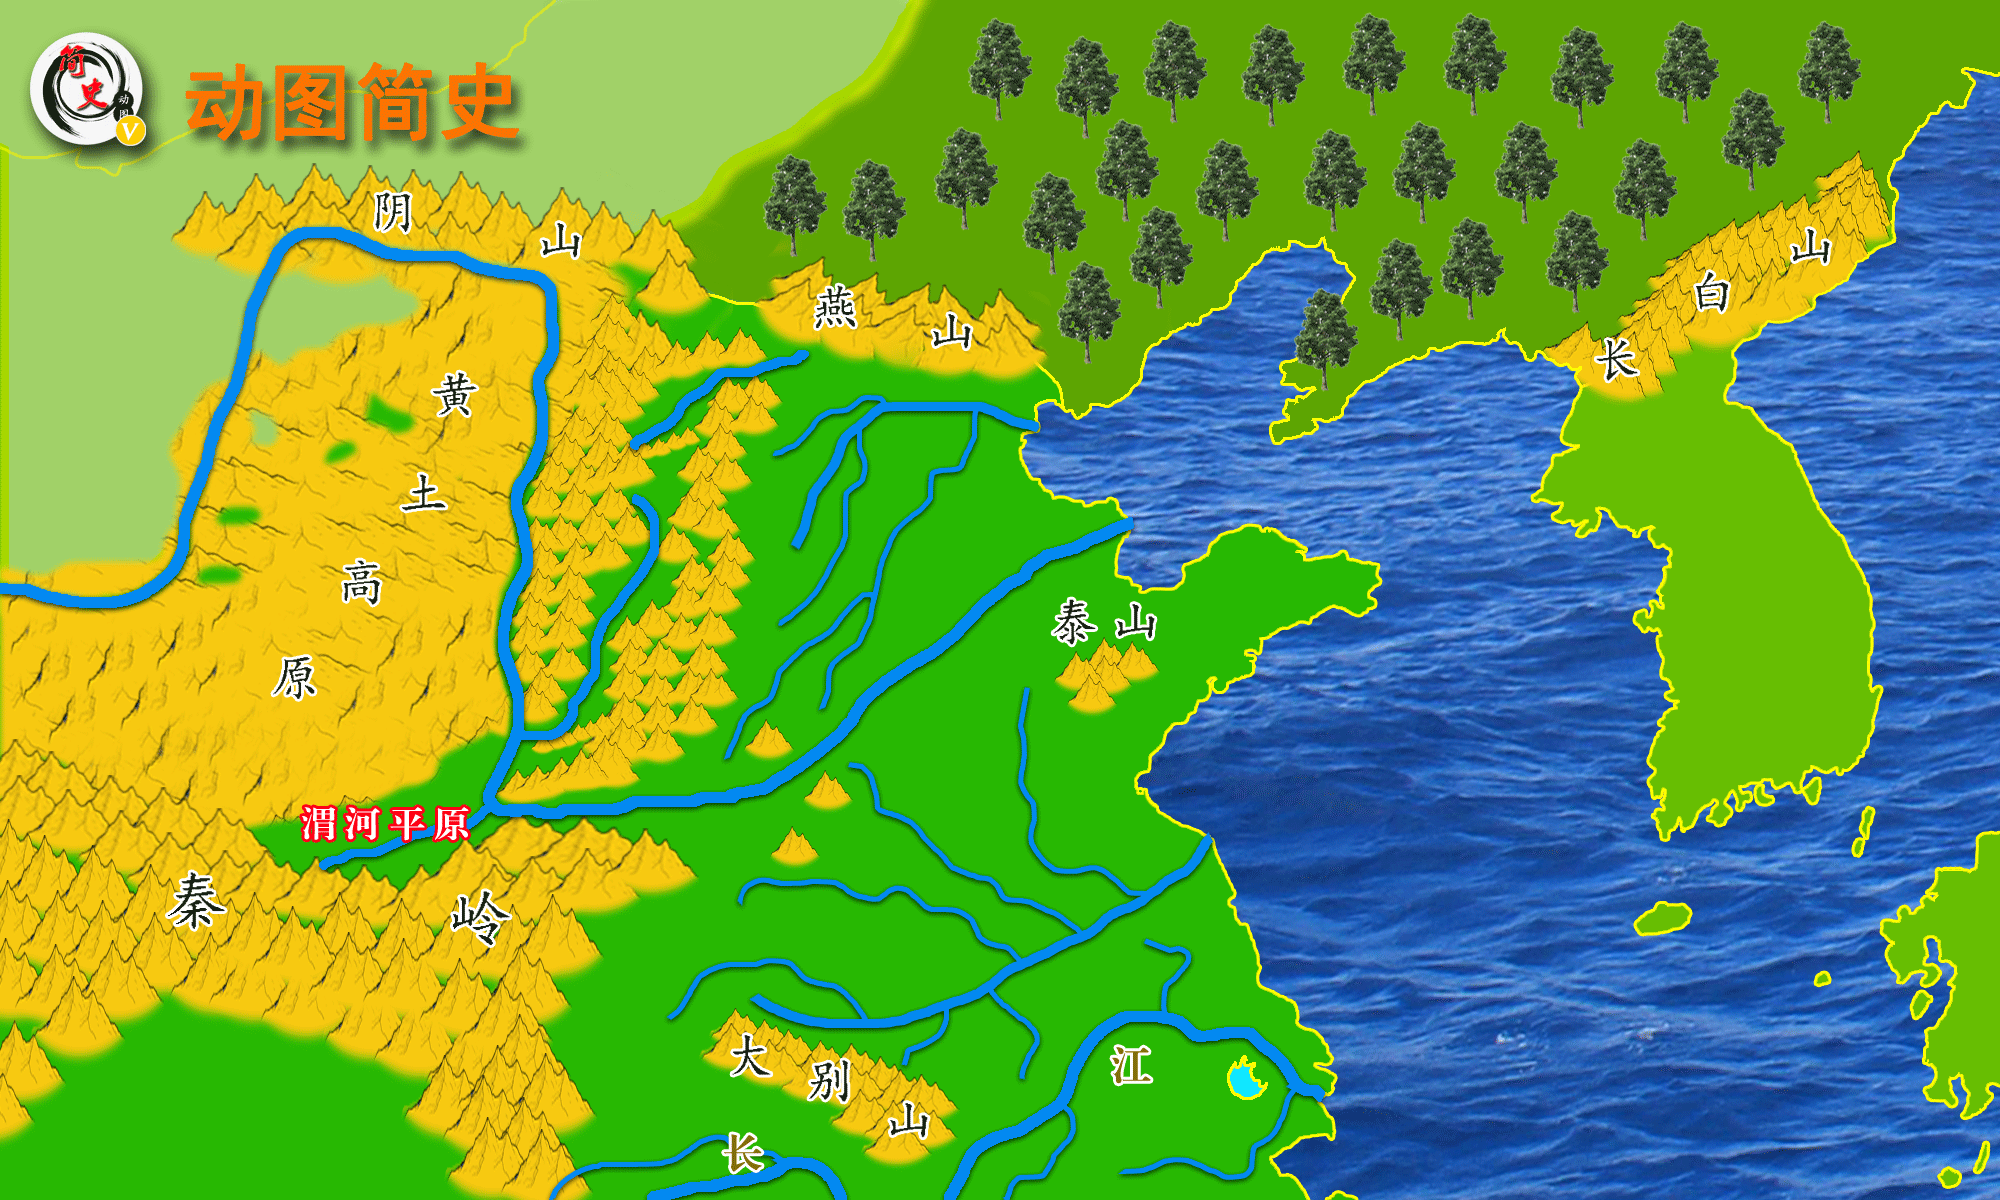 也就是汇入海河流向渤海;走南线可以"夺淮入黄",也就是汇入淮河流向